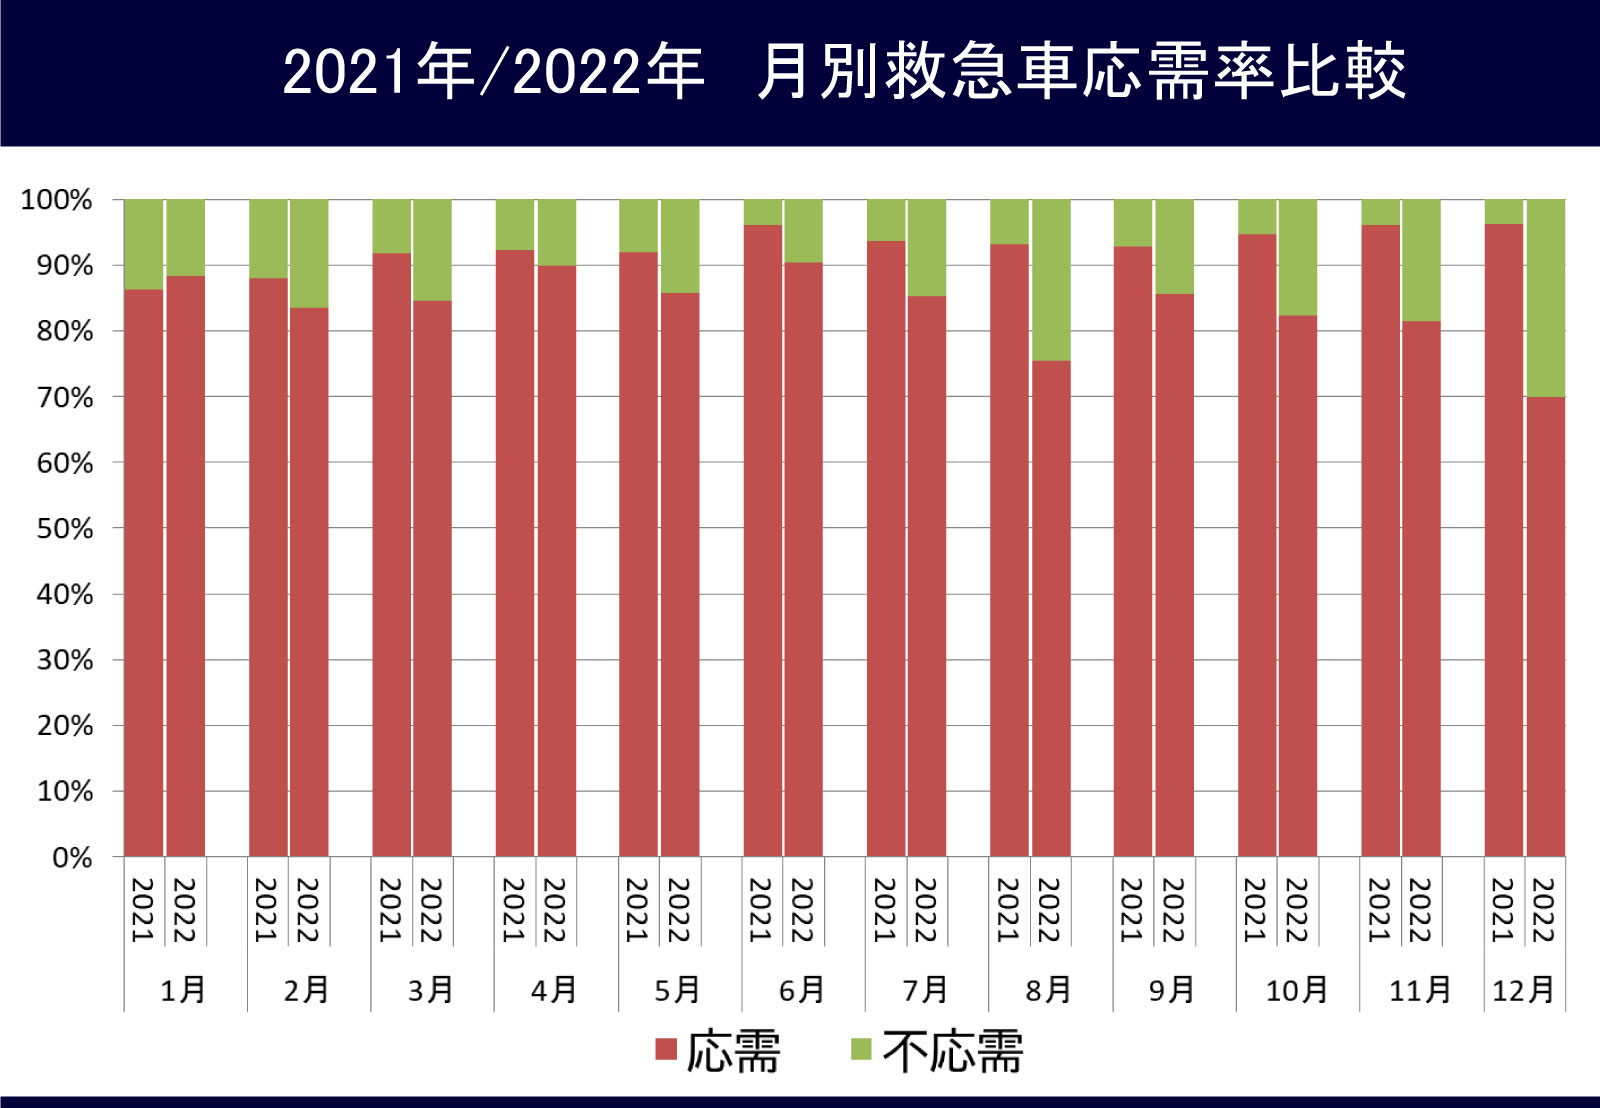 図4 2021年/2022年月別救急車応需率比較
  .jpg